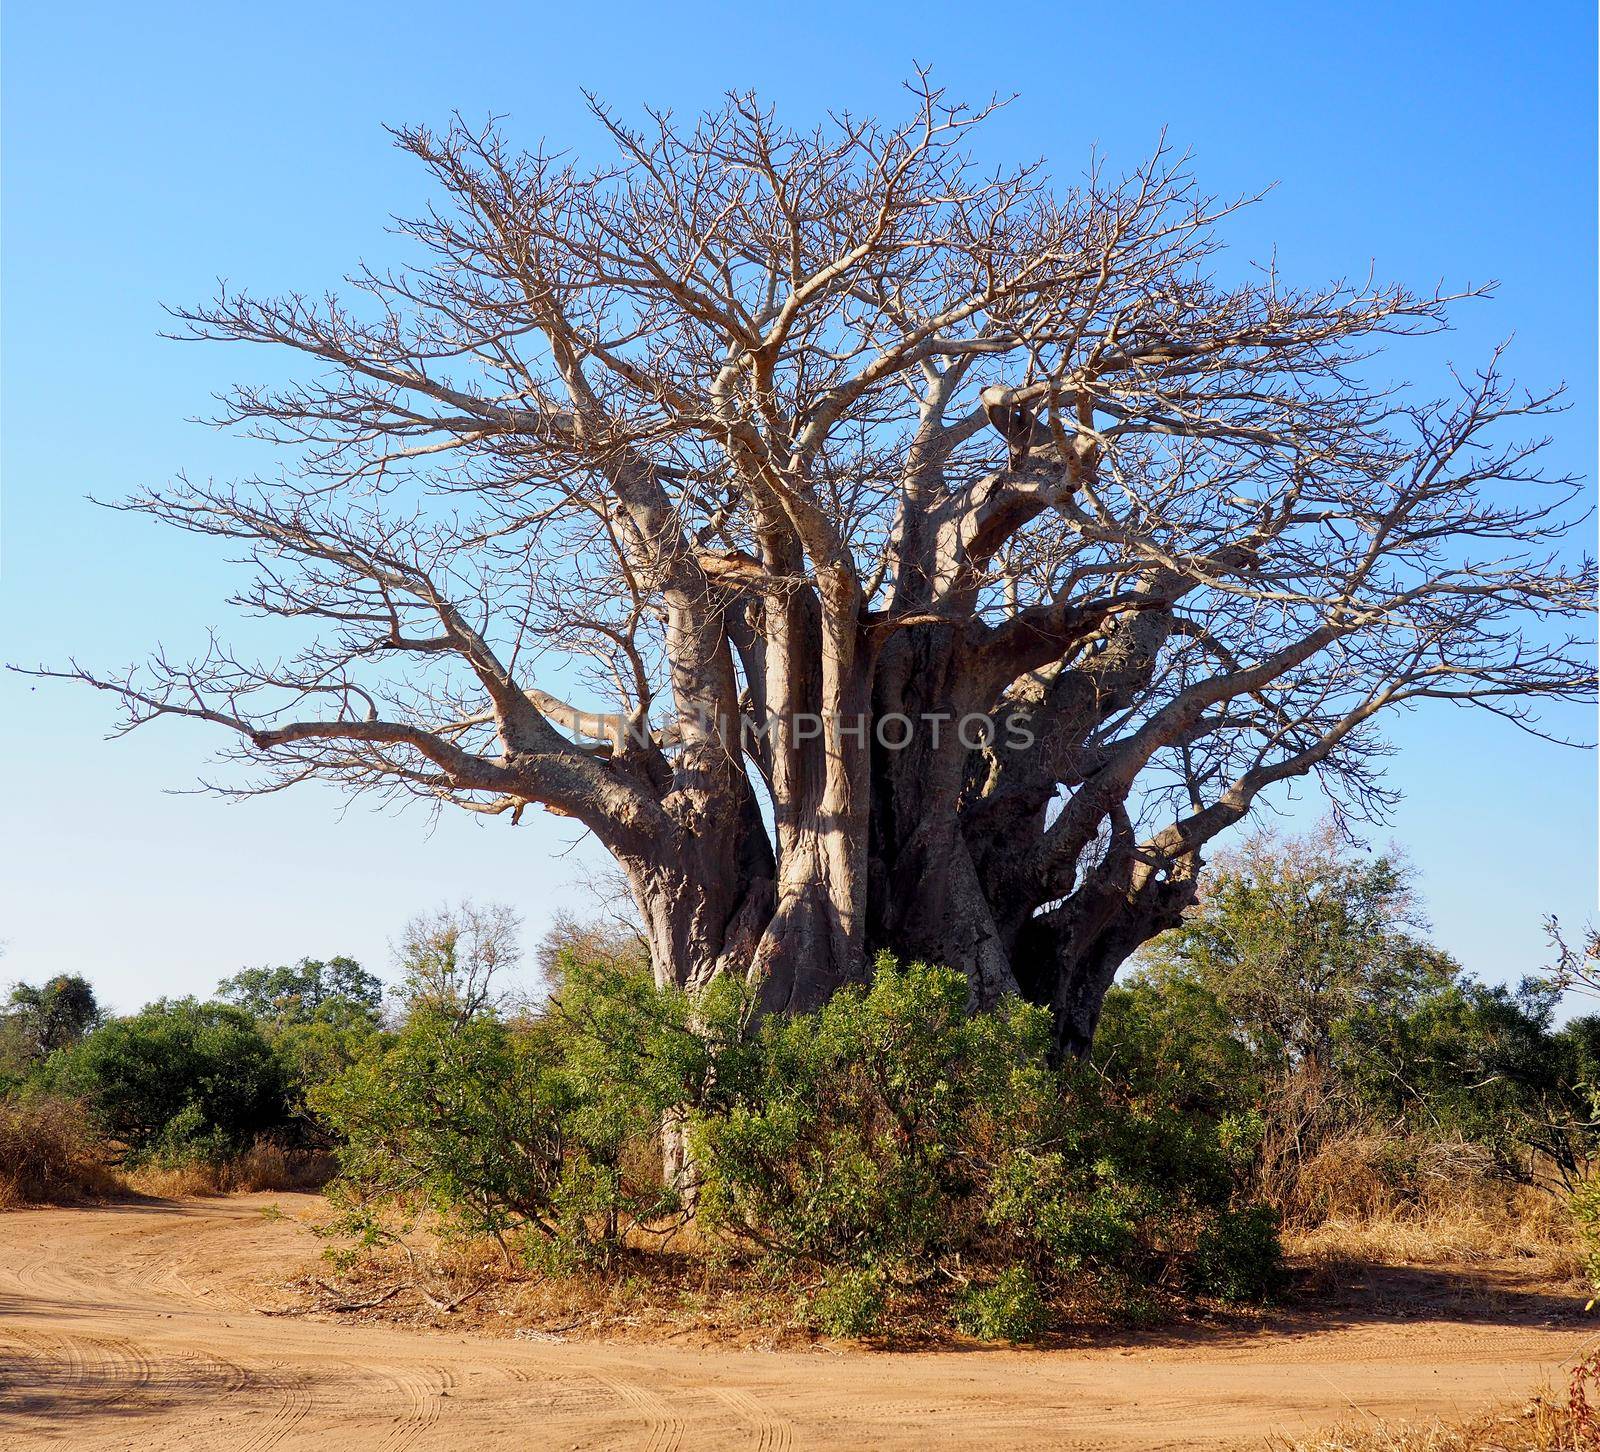 Huge baobab tree in South Africa